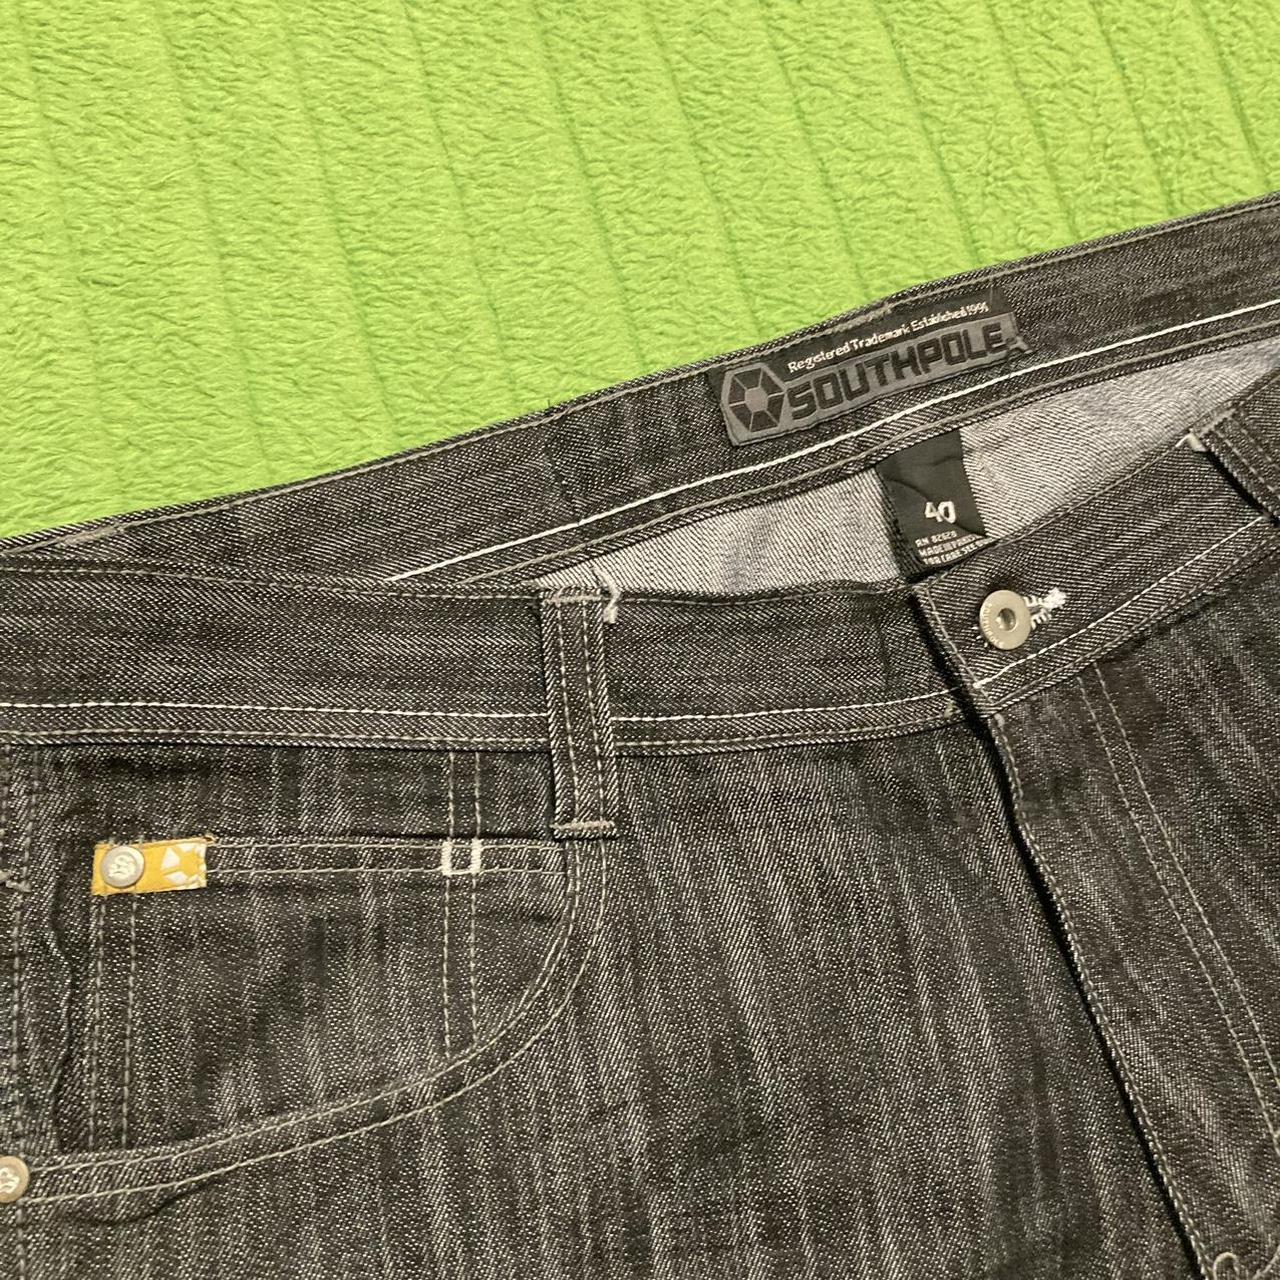 Cyber Y2k baggy southpole jeans Size 40” waist... - Depop